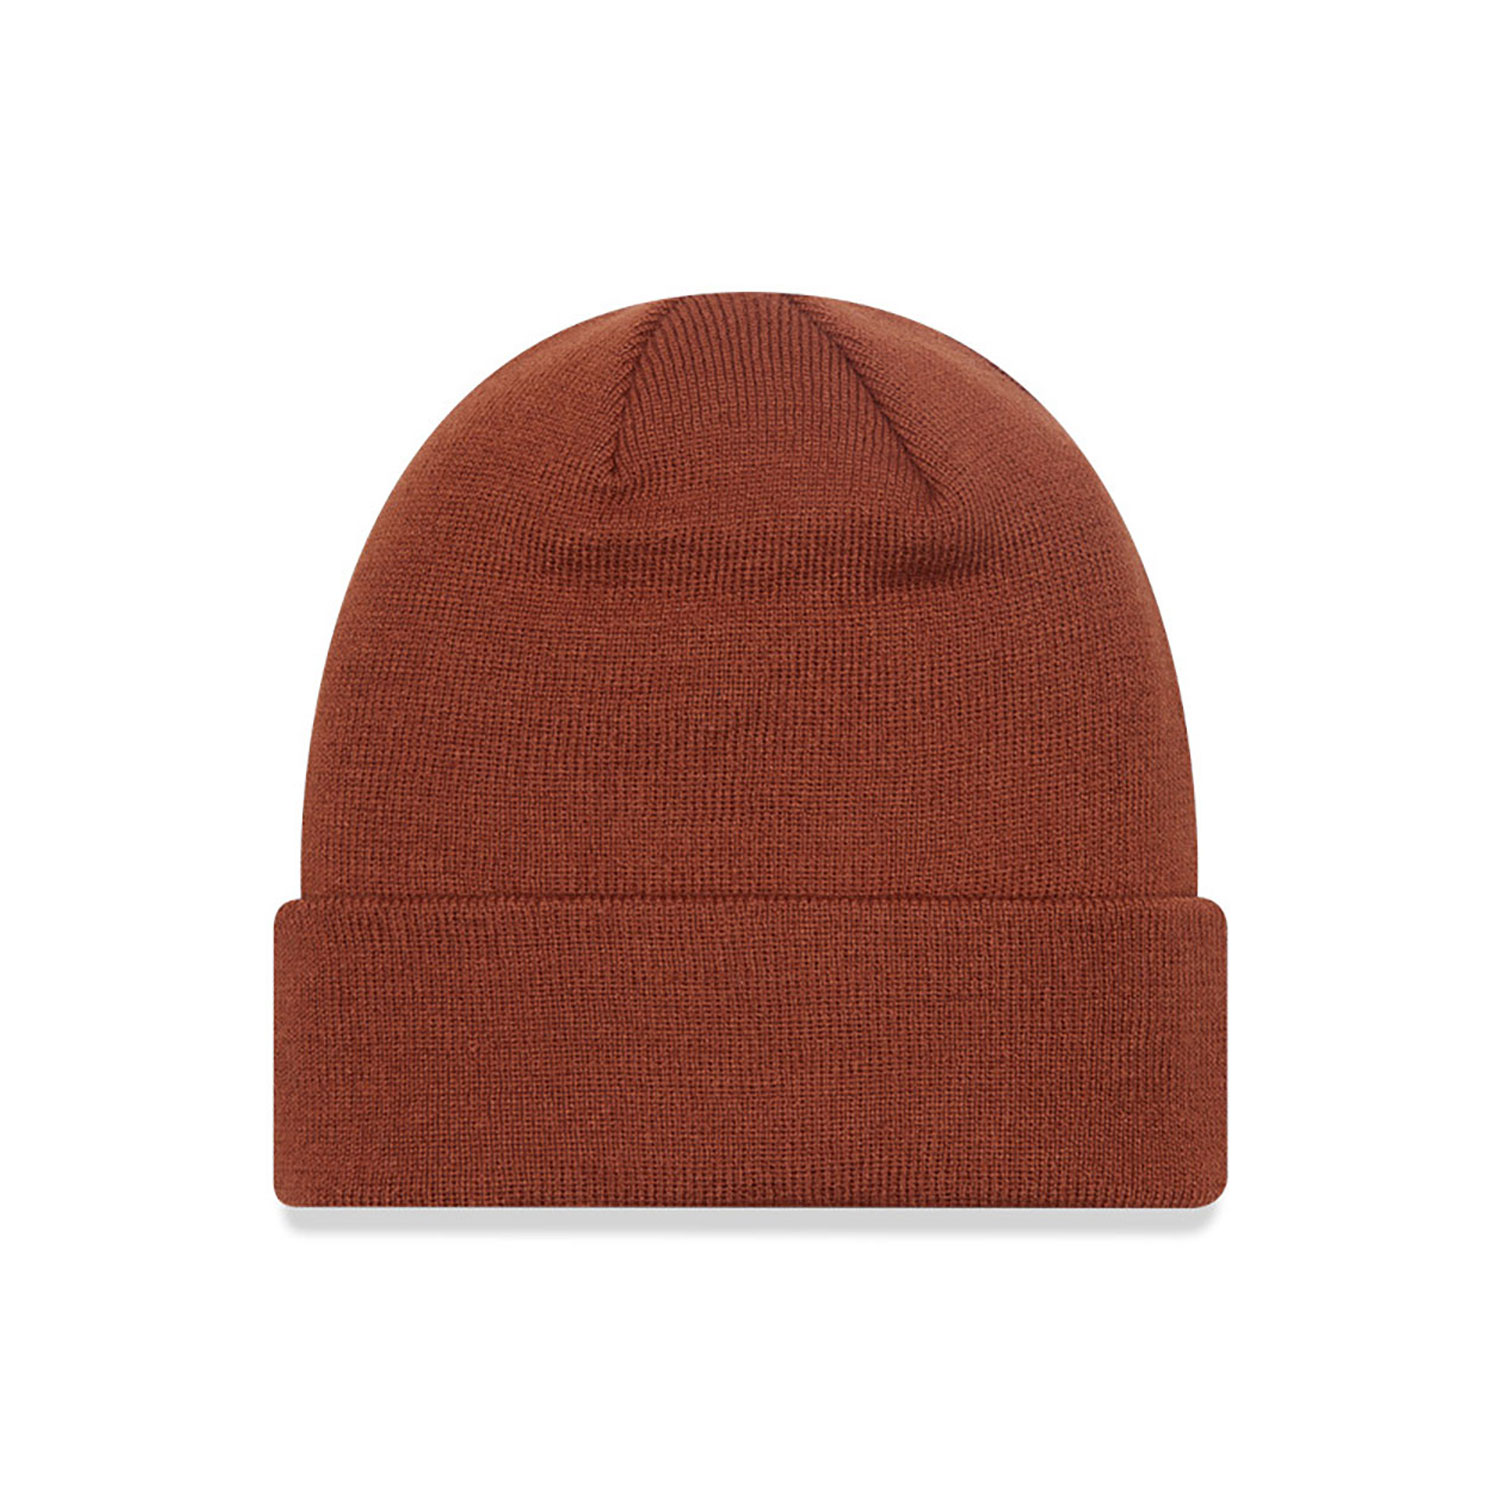 Chicago White Sox League Essential Brown Cuff Knit Beanie Hat